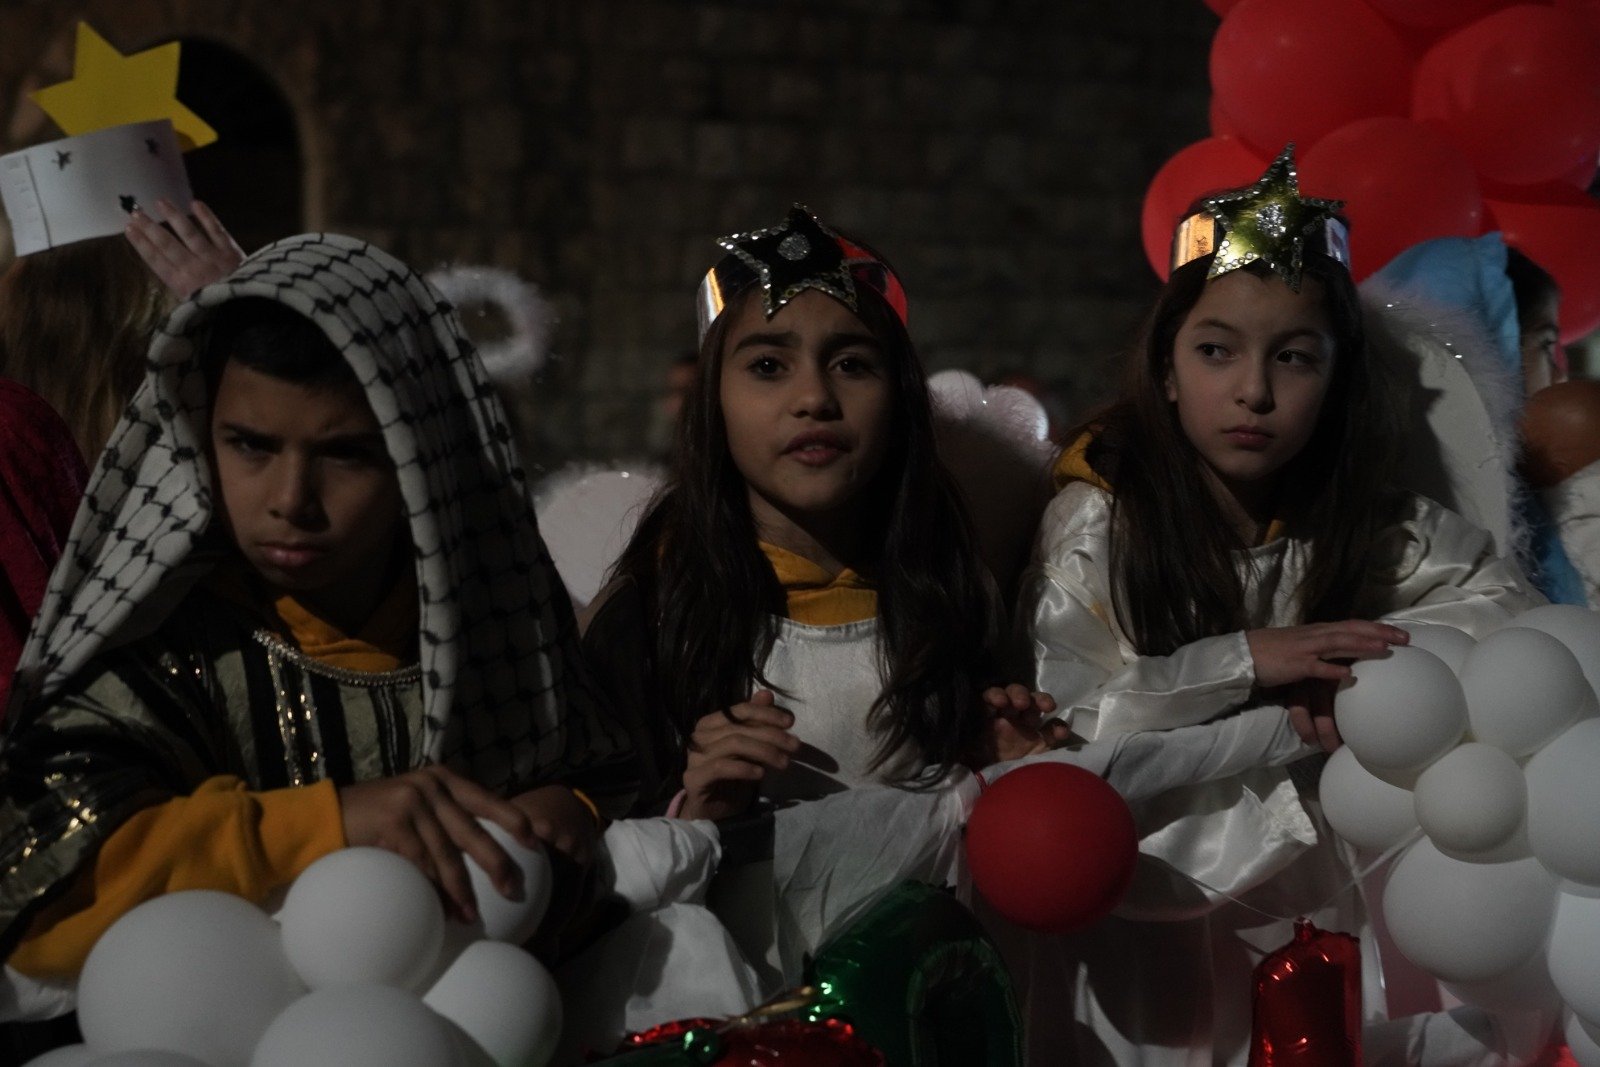 بالصور: "بكرا" يرصد فرحة استقبال الميلاد في الناصرة -121